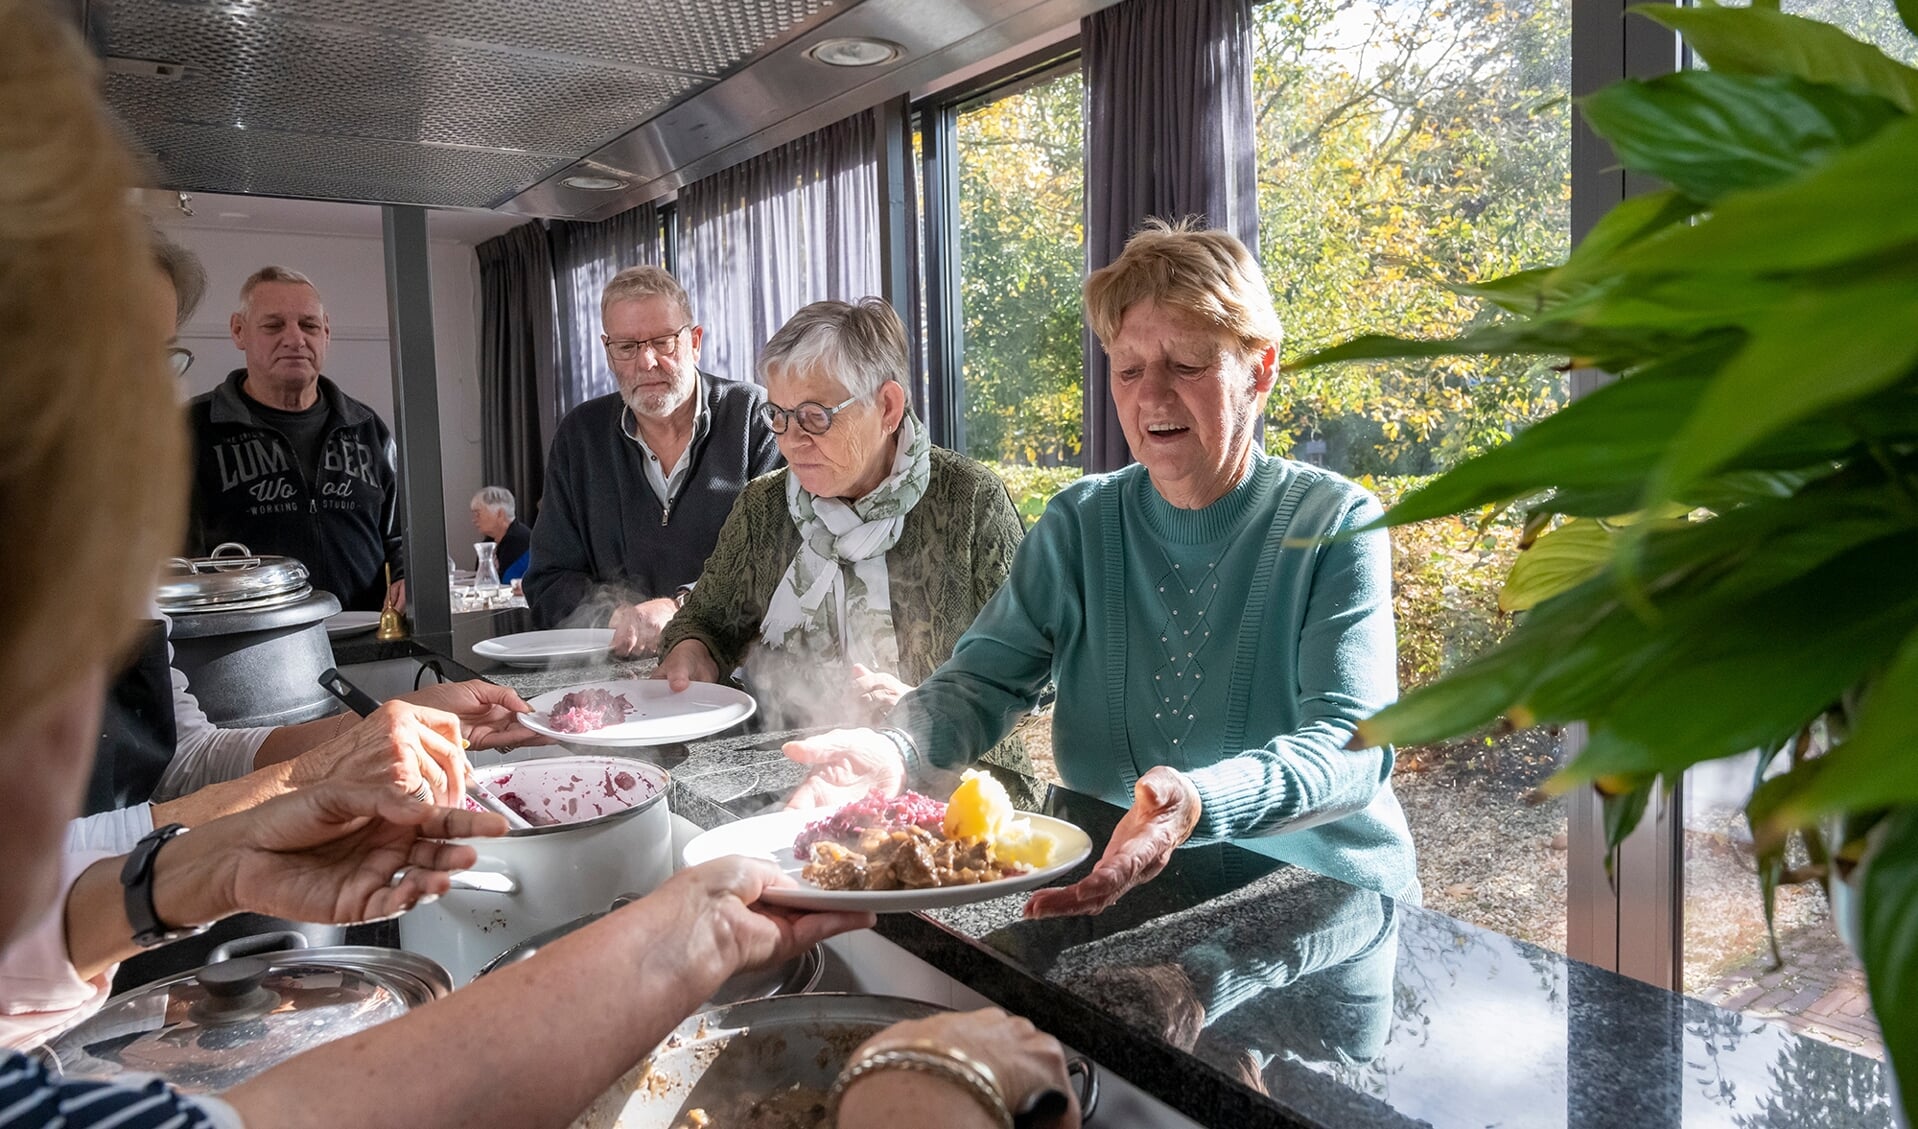 Op donderdag 21 oktober was er in Enspijk na ruim anderhalf jaar noodgedwongen pauze eindelijk weer een Open Eettafel. Tientallen ouderen genoten zichtbaar van hun heerlijke herfstige maaltijd én van elkaars gezelschap.